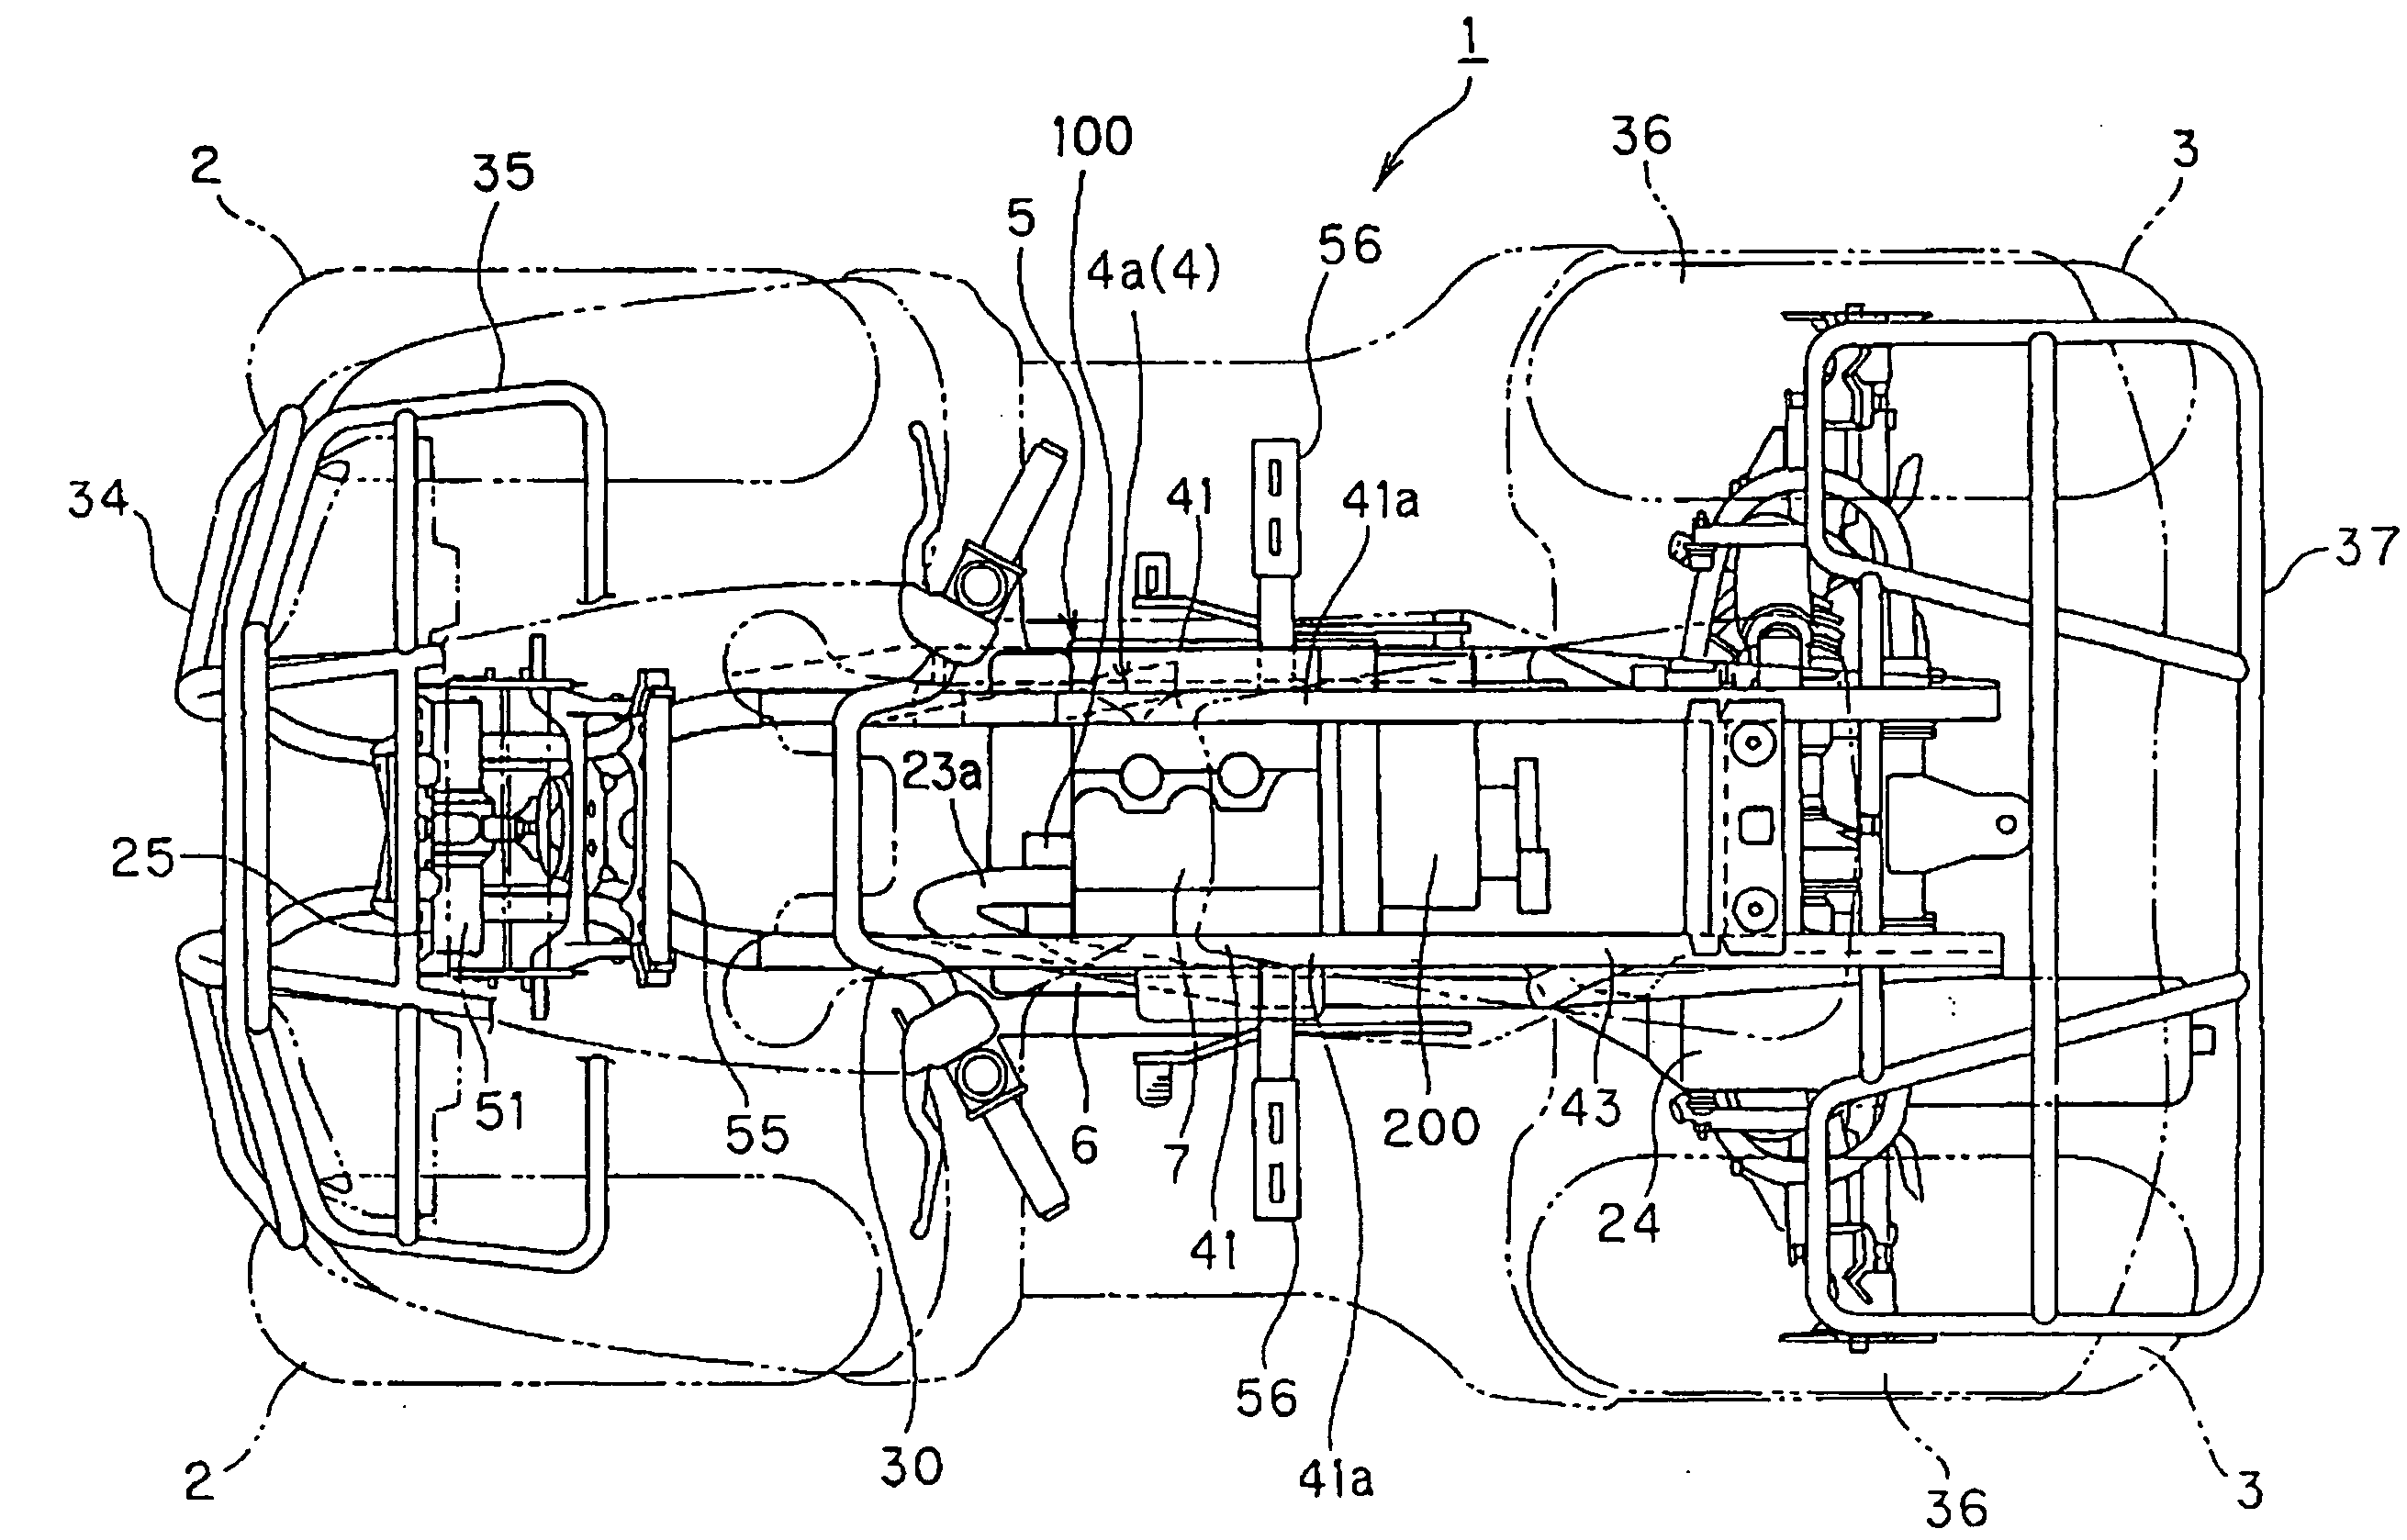 Engine arrangement structure of saddle-ride type vehicle